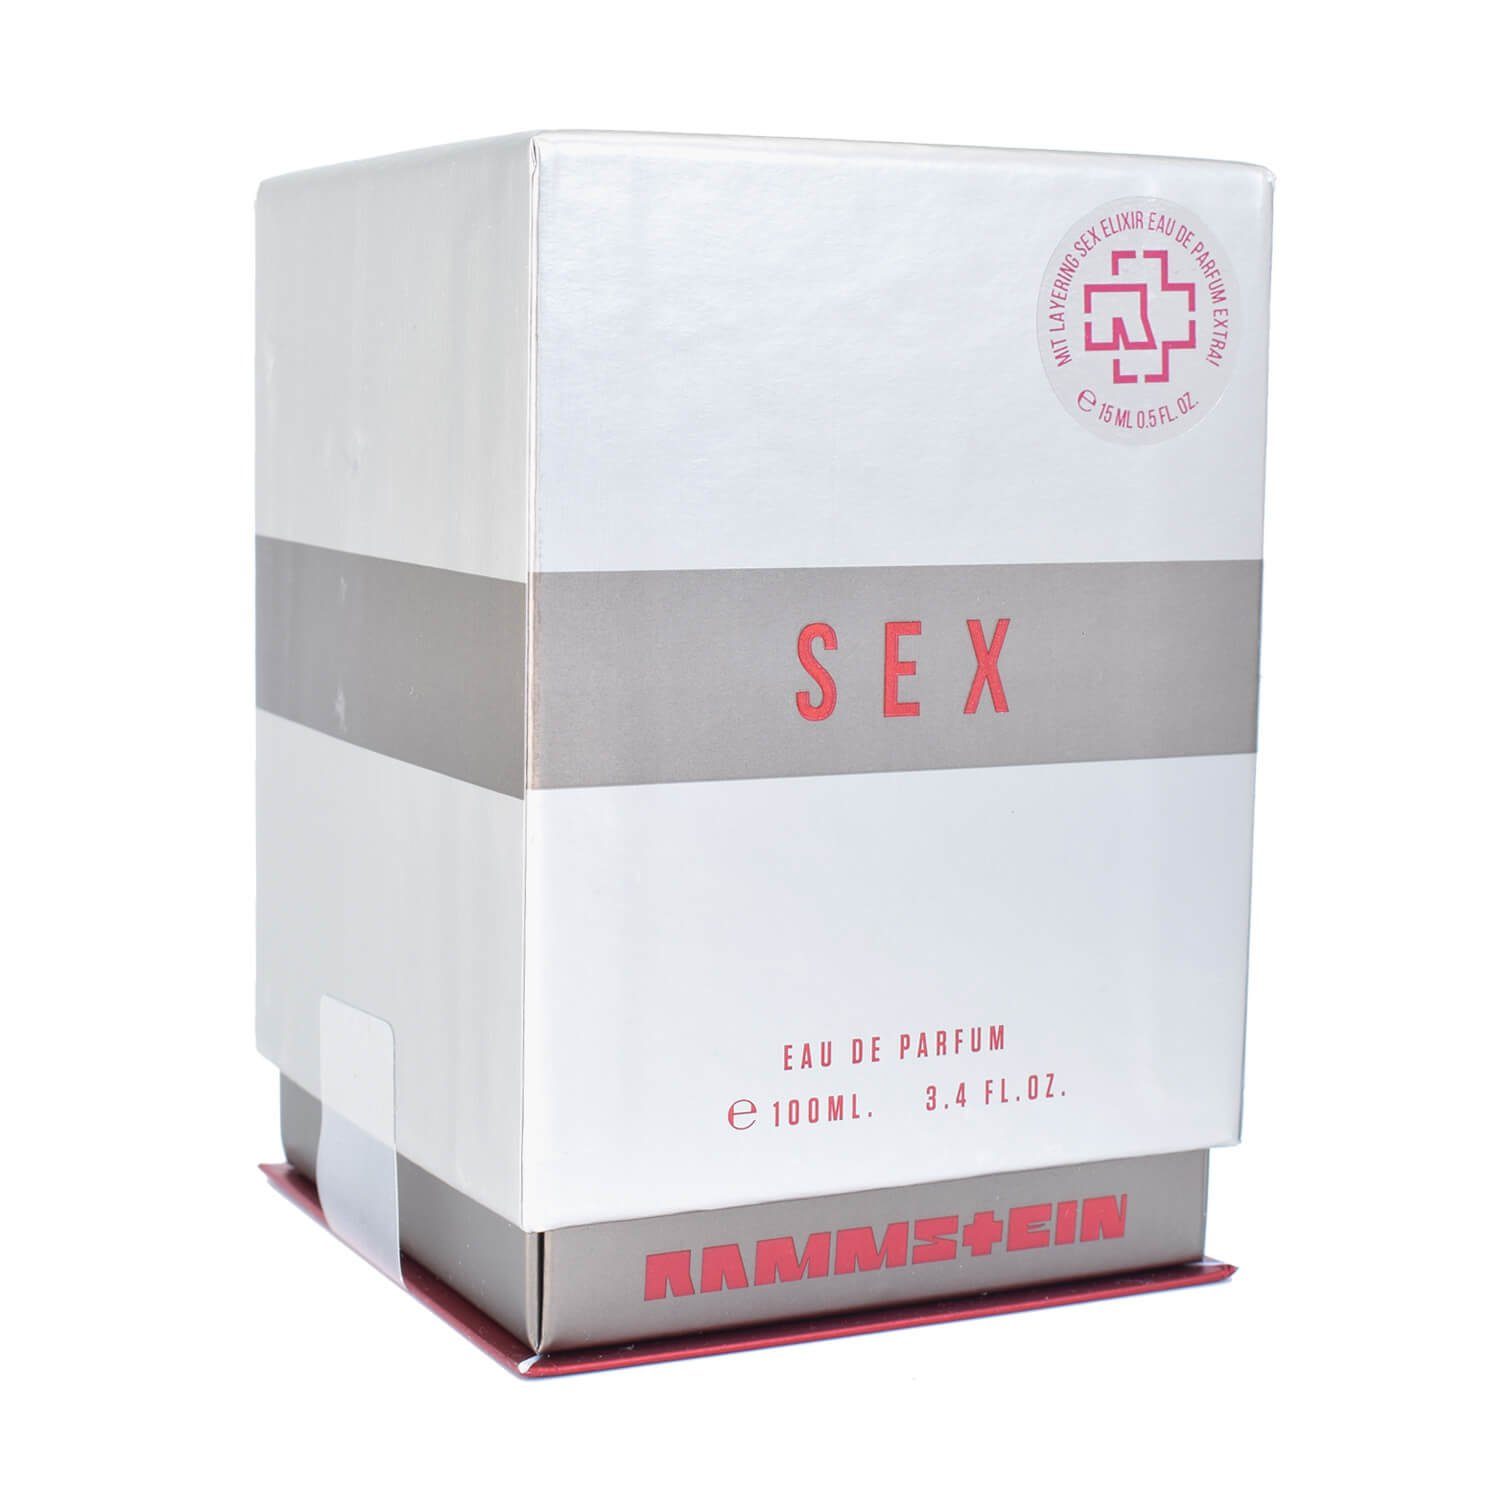 100 Sex 15 + Eau ml Parfum de ml Rammstein